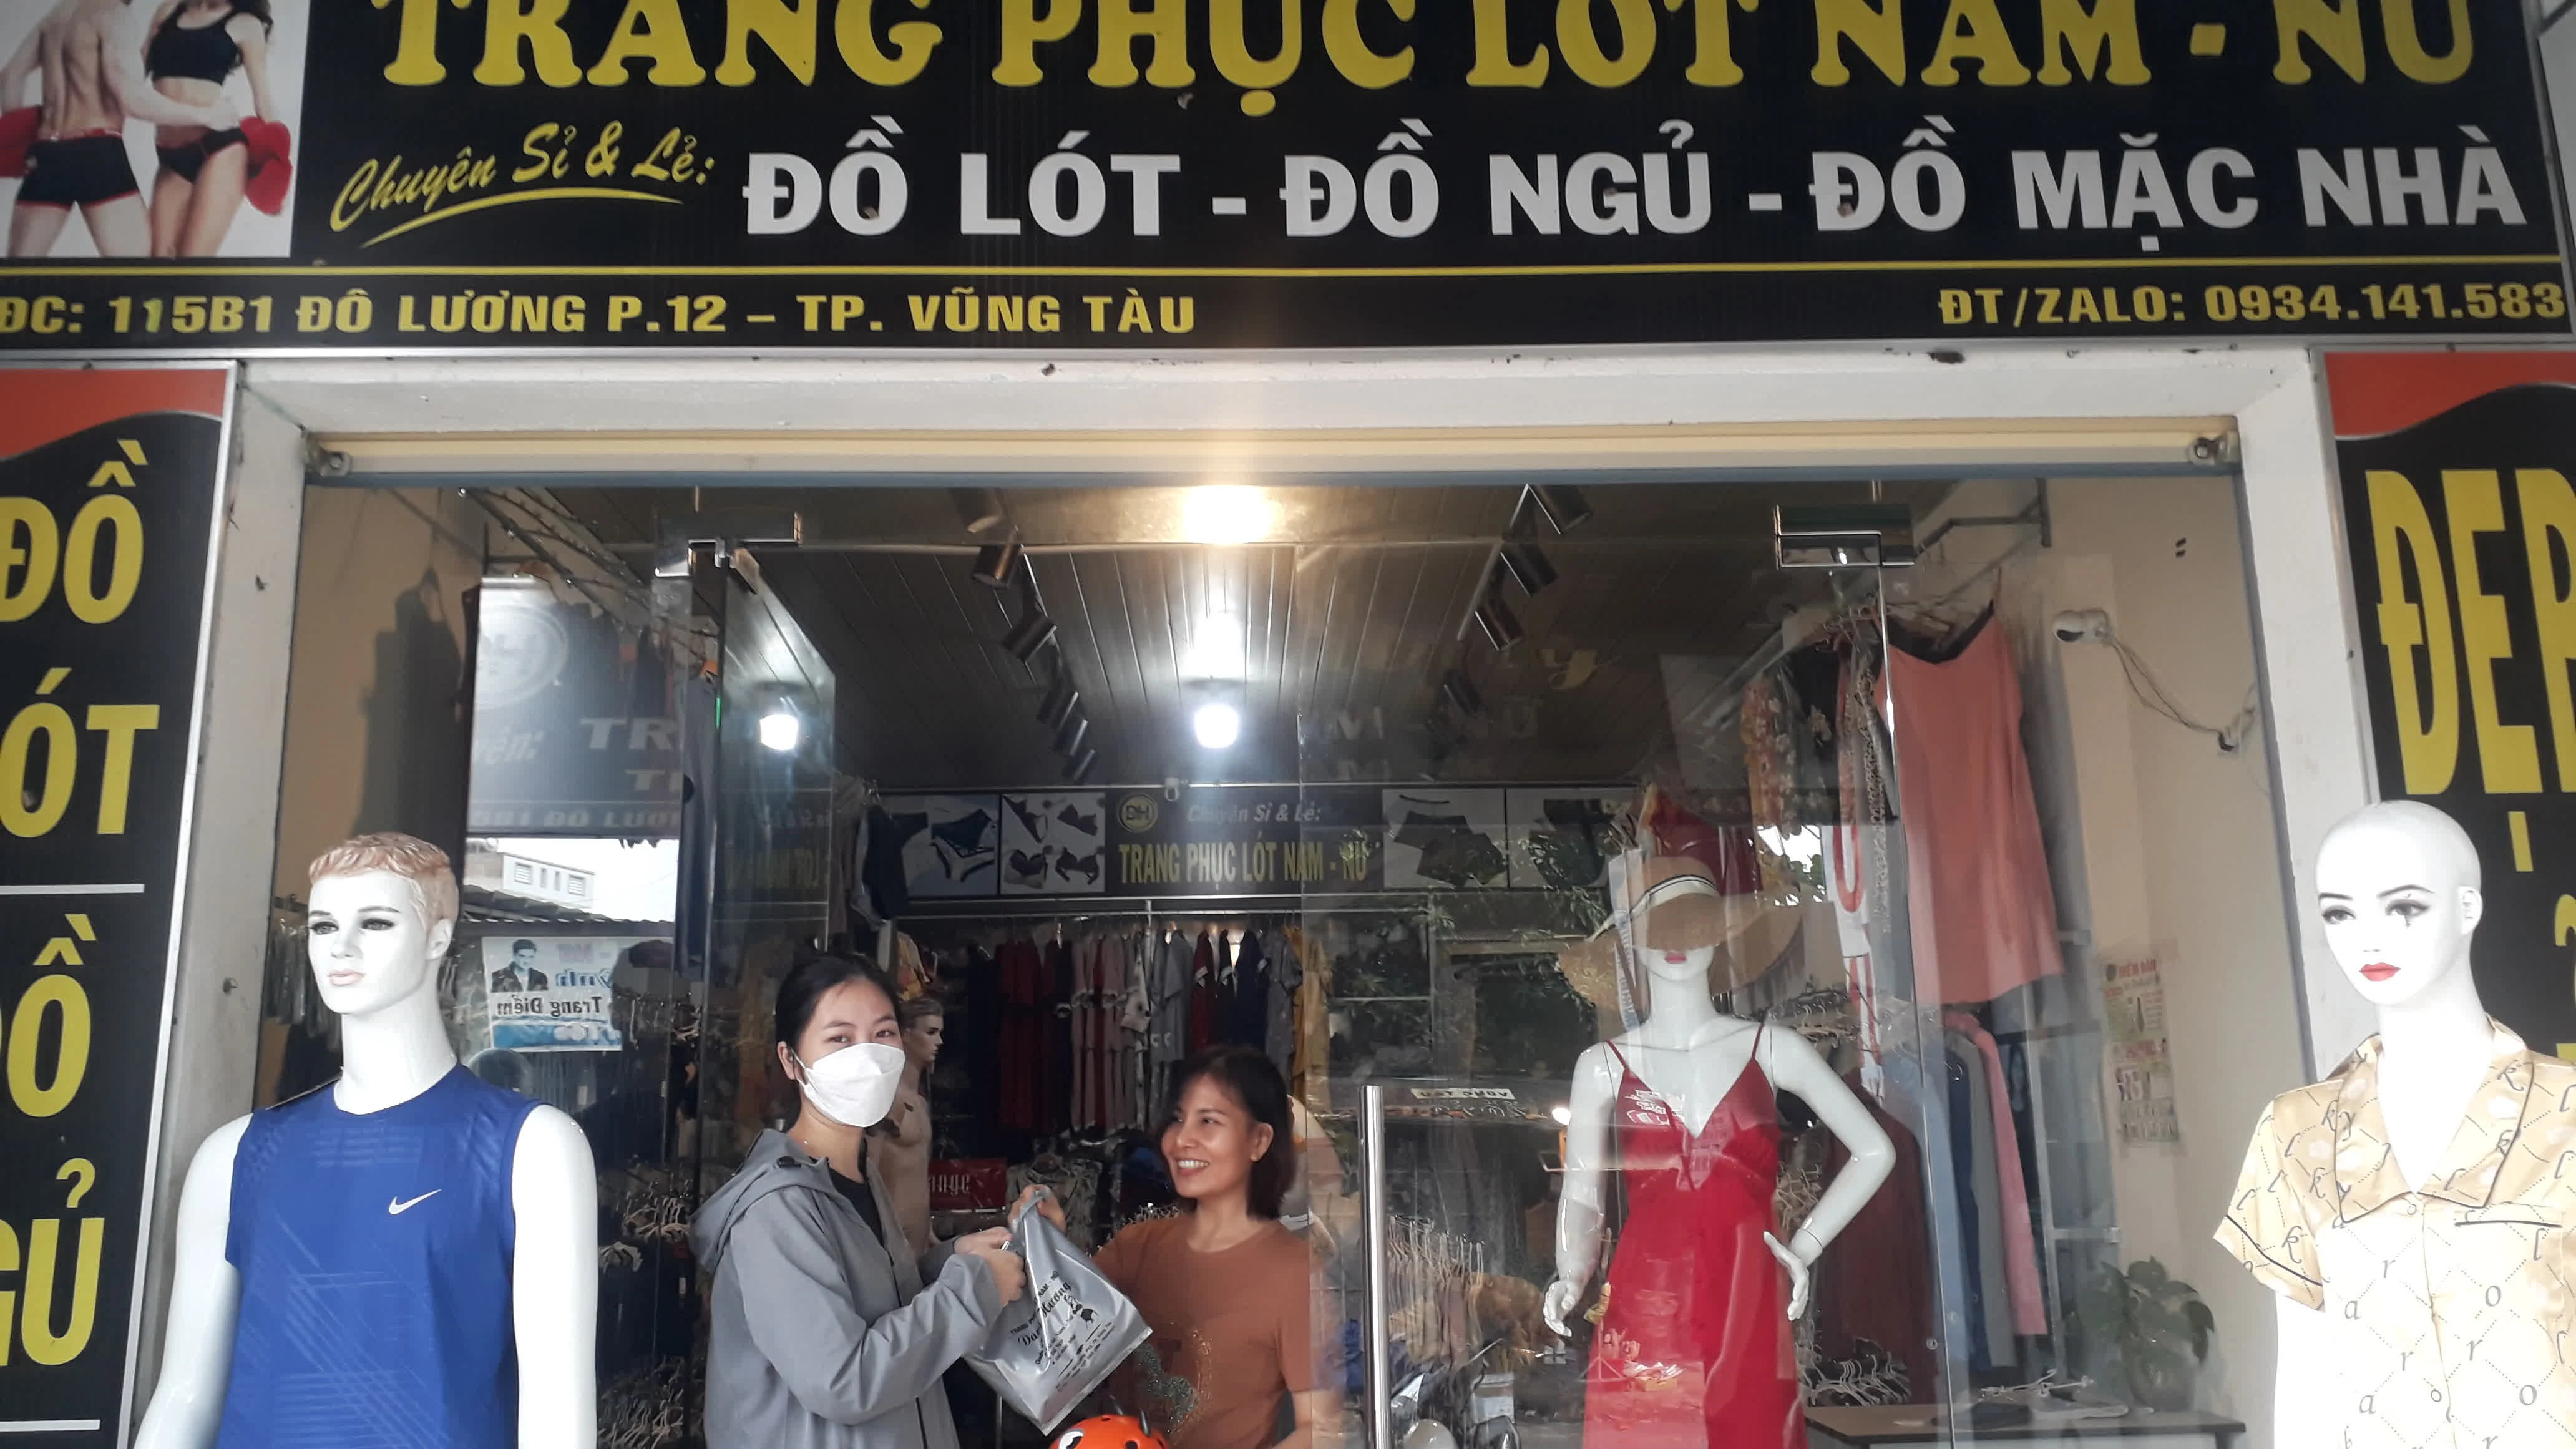 do lot nu dang quan cotton cap vua do chinh hang 36 thai lan